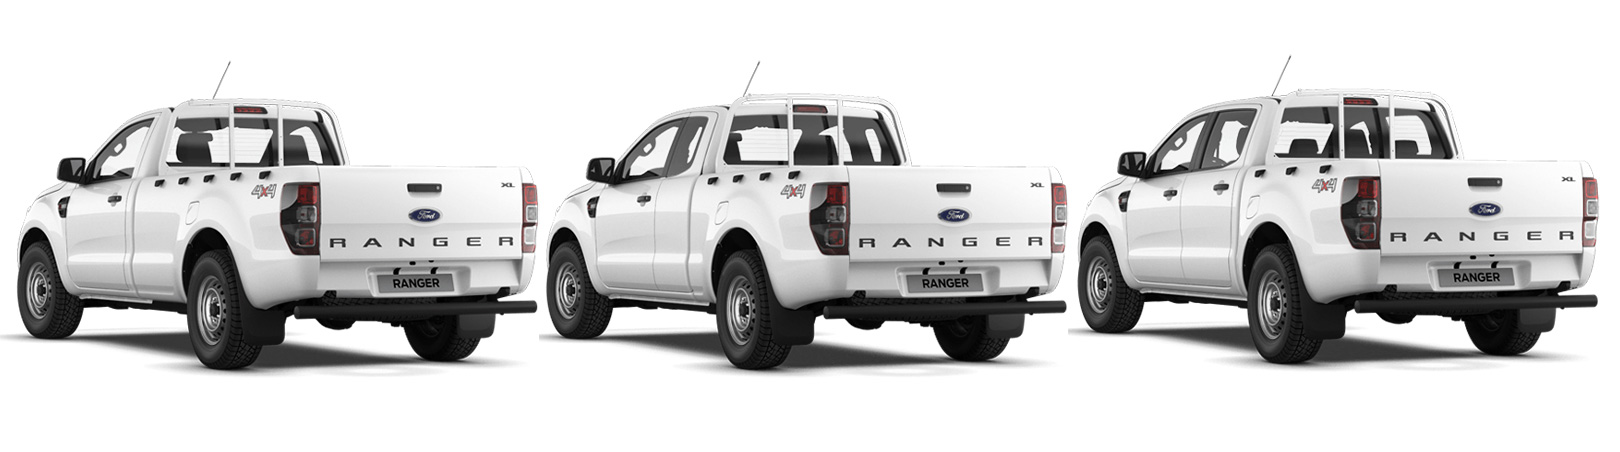 Ford Ranger: Einzelkabine, Superkabine und Doppelkabine